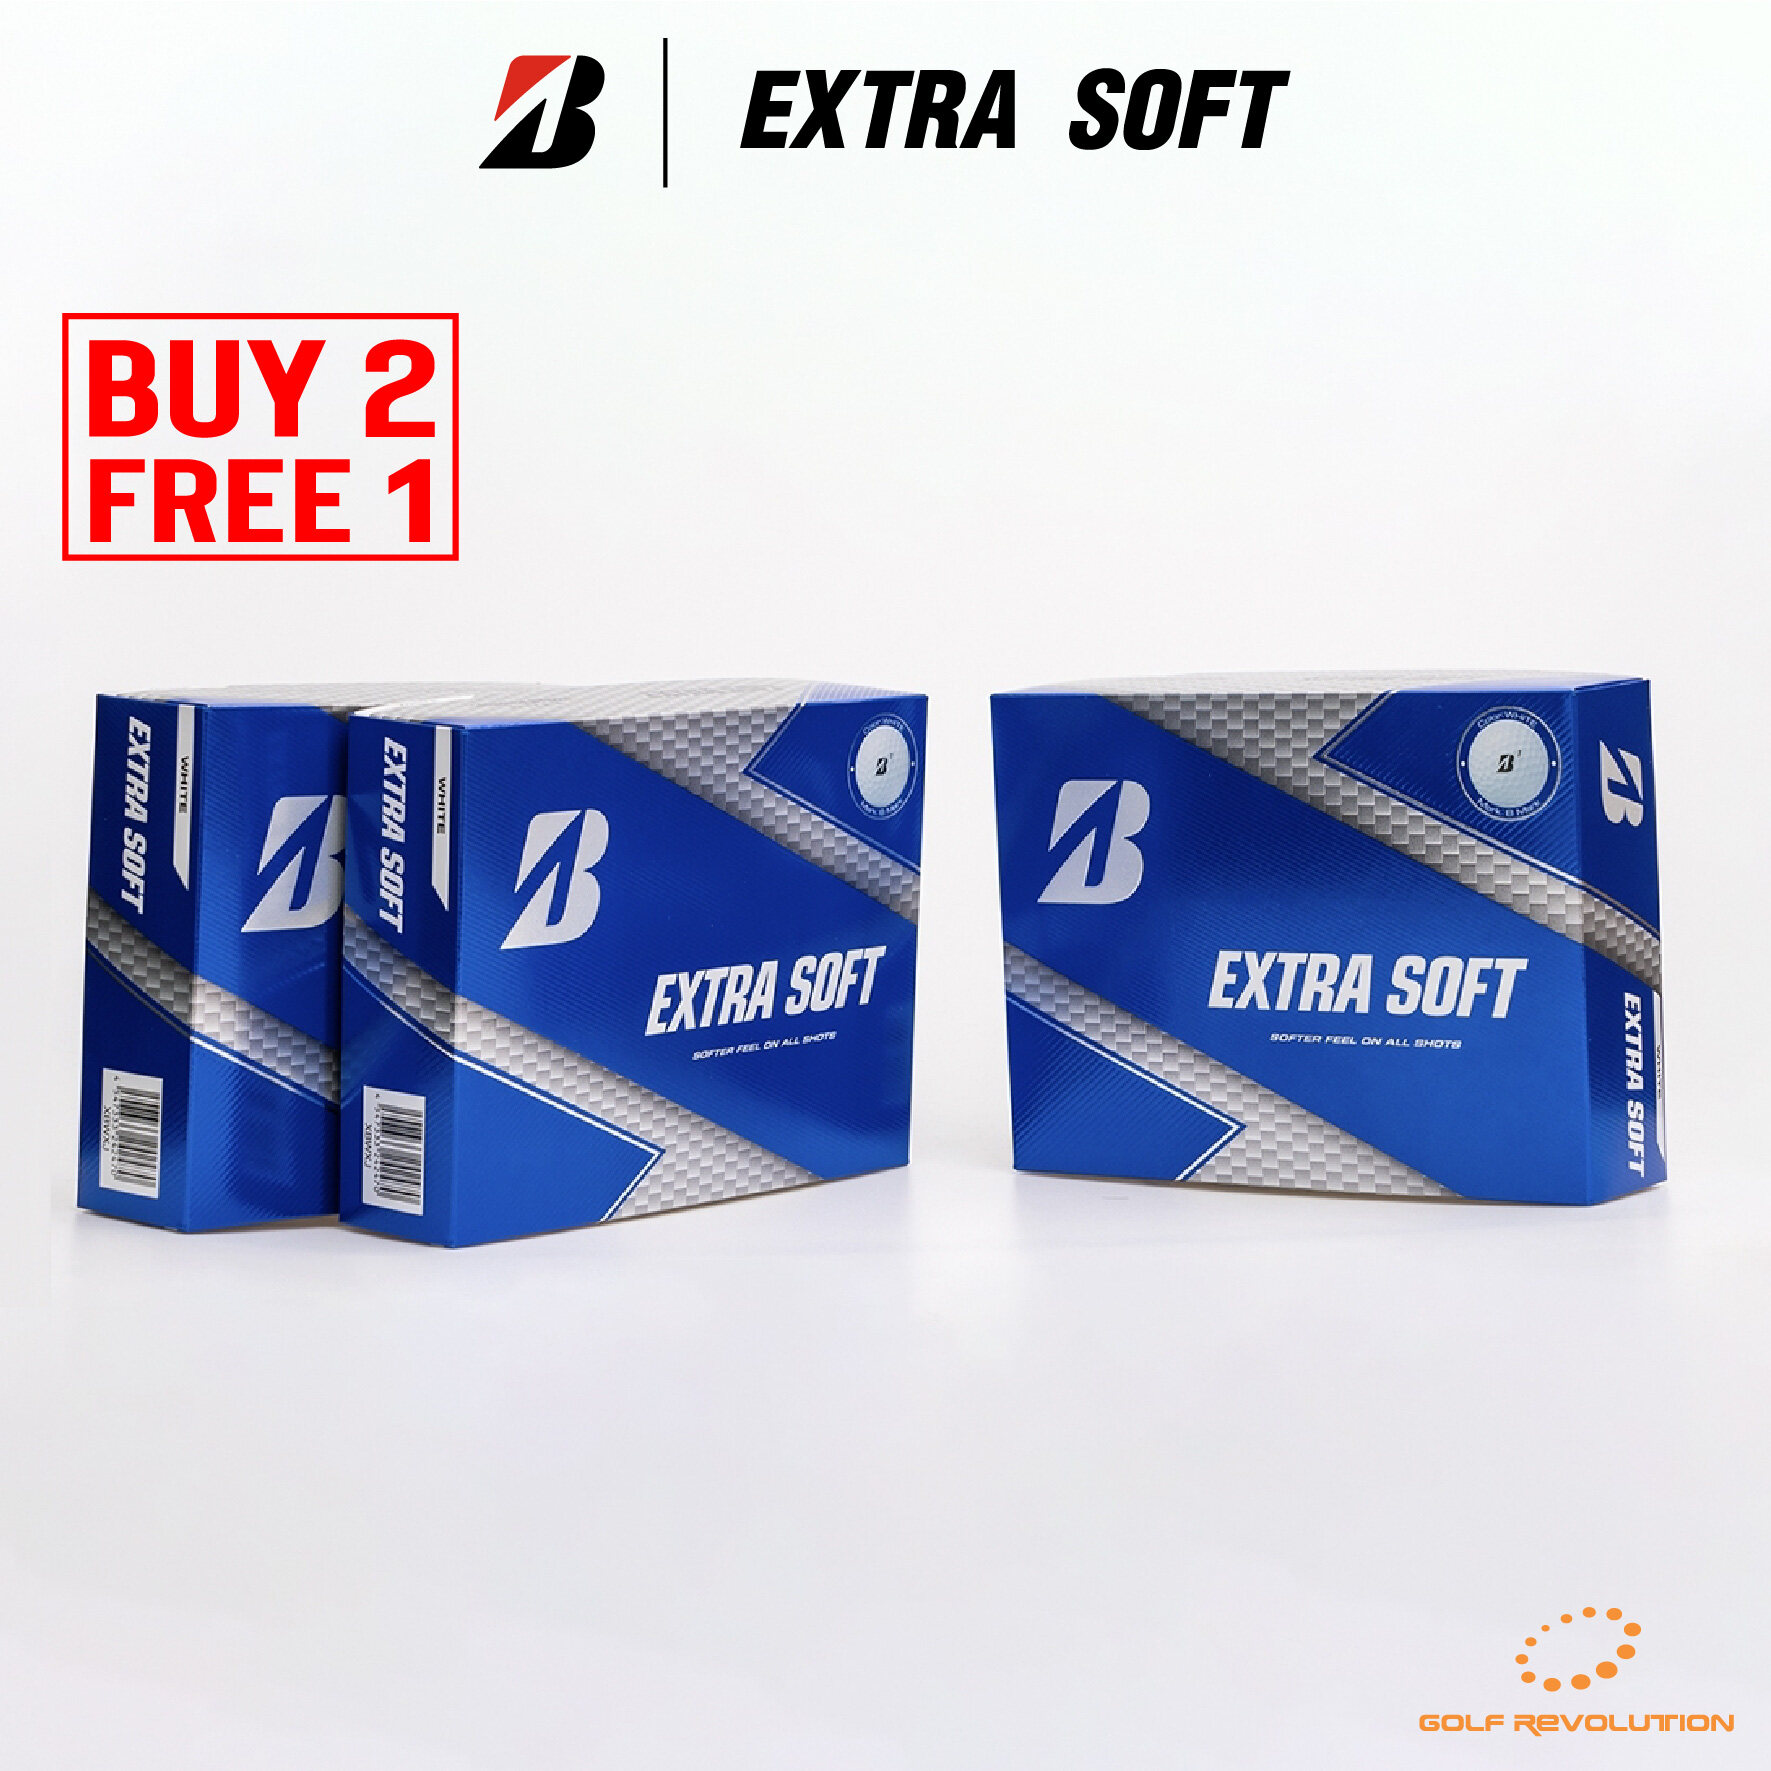 ลูกกอล์ฟ Bridgestone Golf - Extra Soft White ซื้อ 2 แถม 1, Price: 890 THB/dz (Promotion : Buy2, Free1)